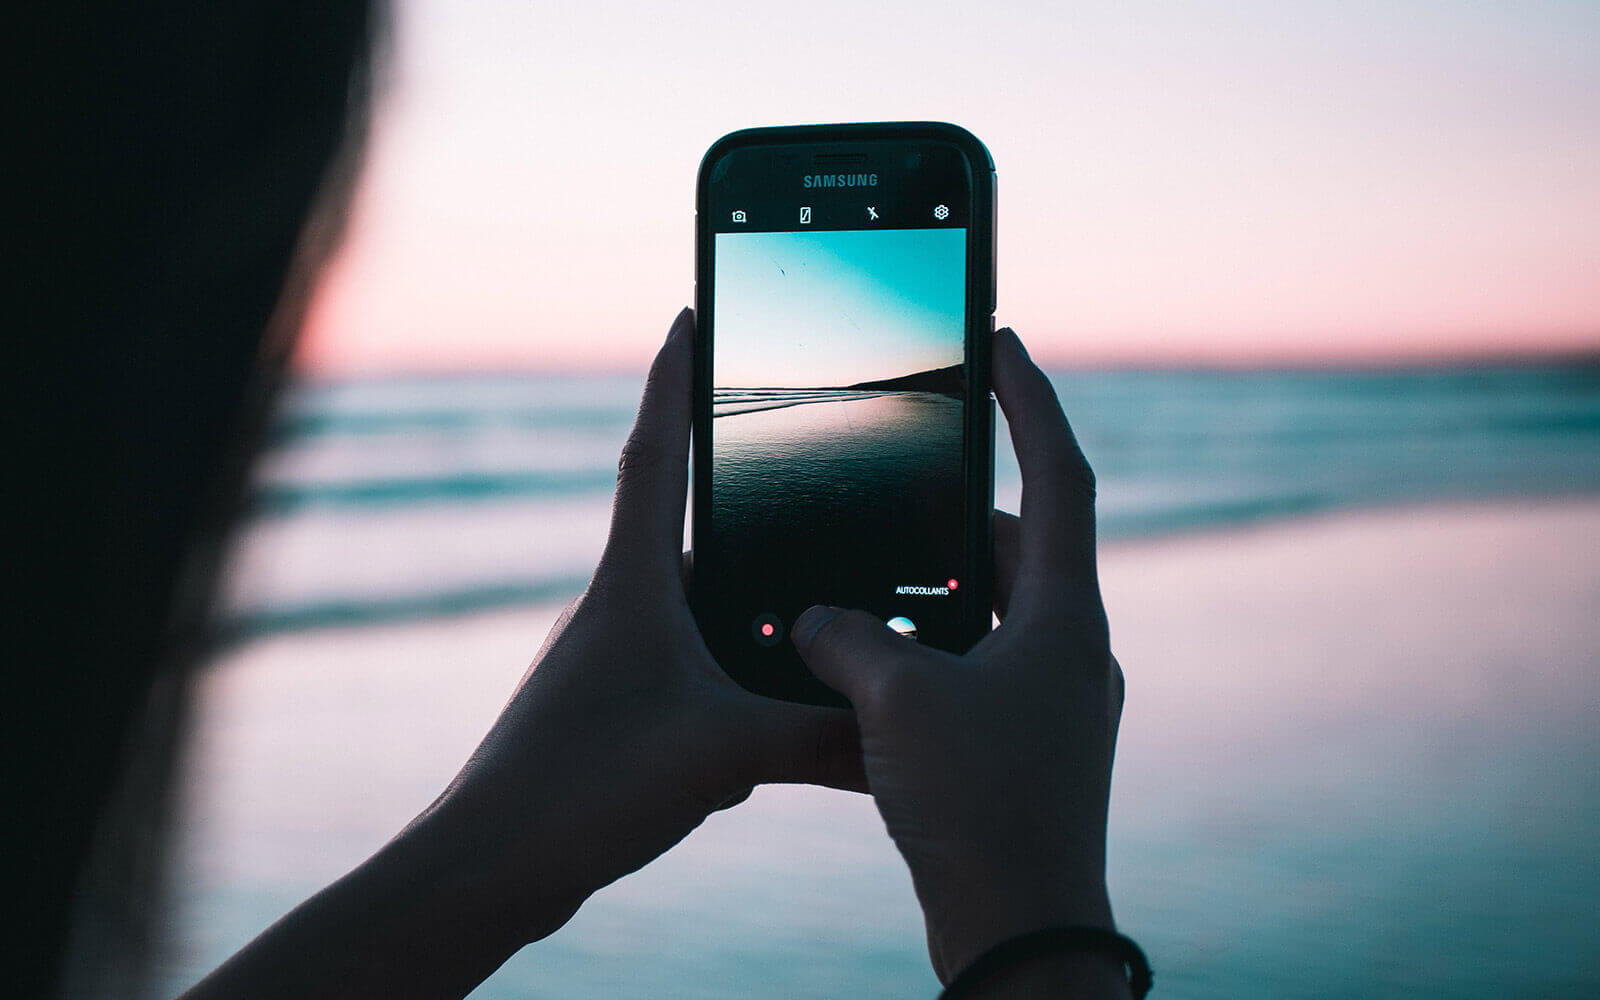 Fototipps fürs Handy – Smartphone am Strand